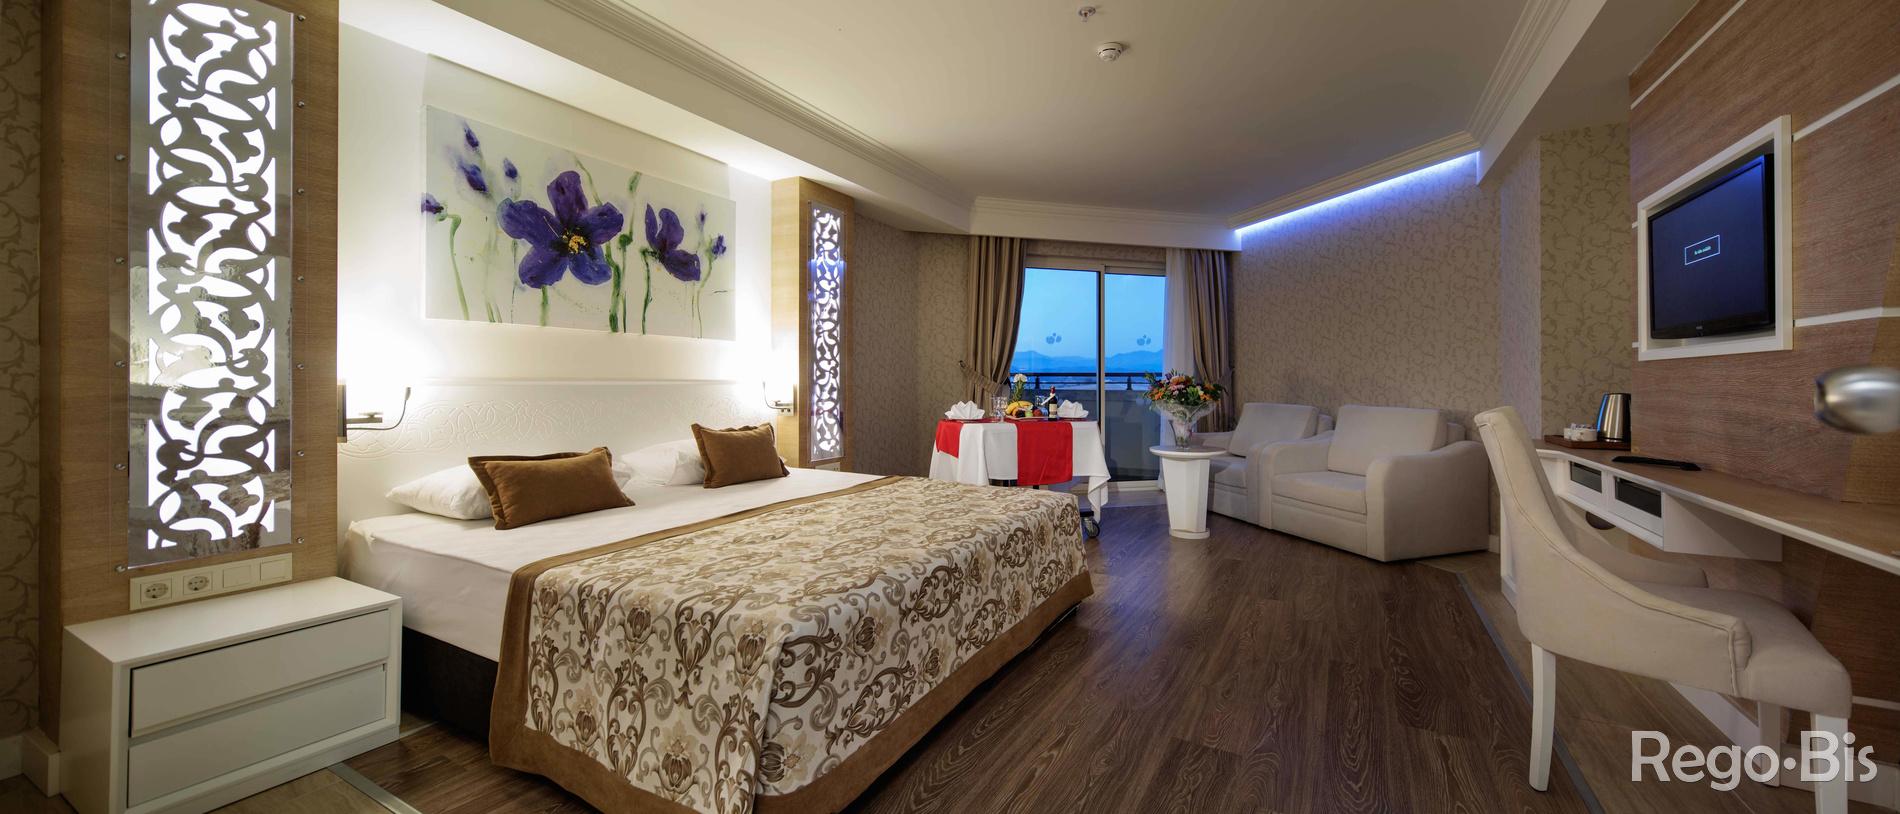 Hotel Crystal Sunset Luxury Resort & Spa - Turcja